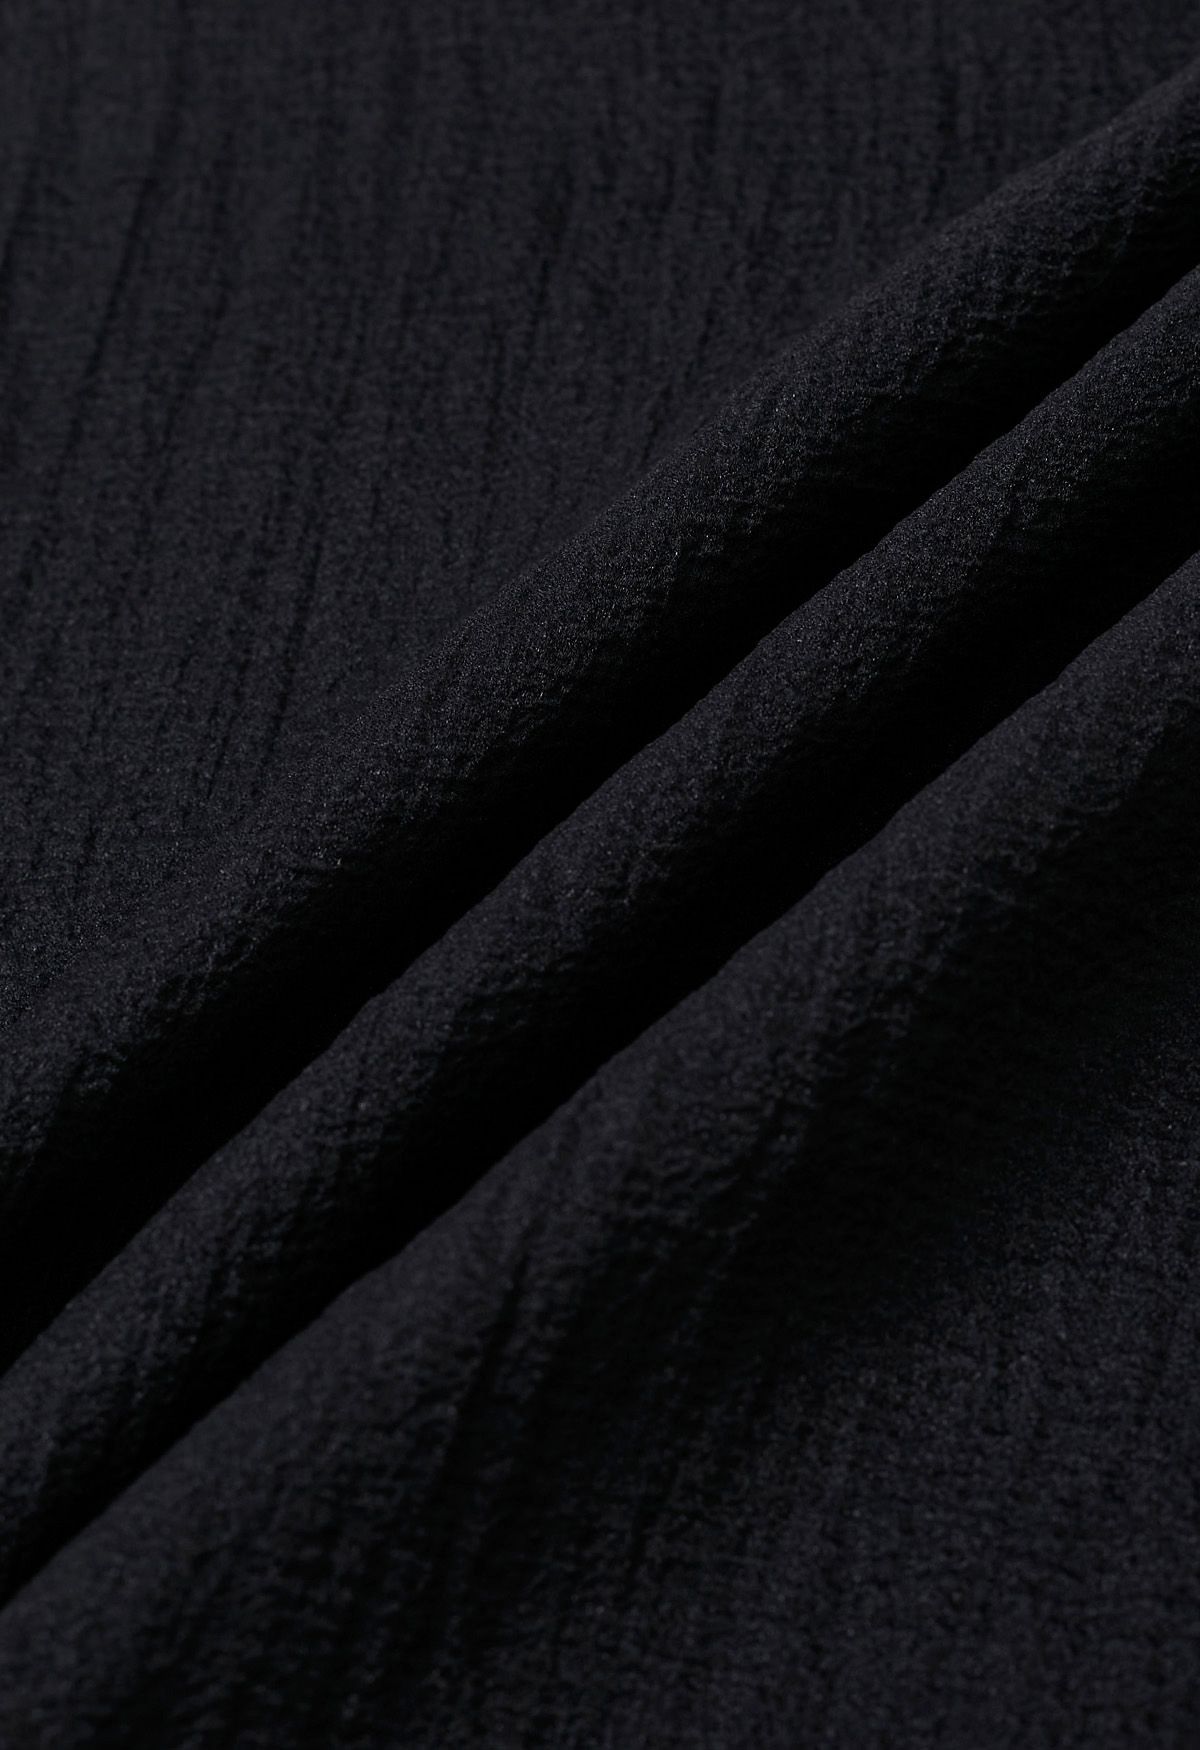 Self-Tie Side Bowknot Sheer Top in Black